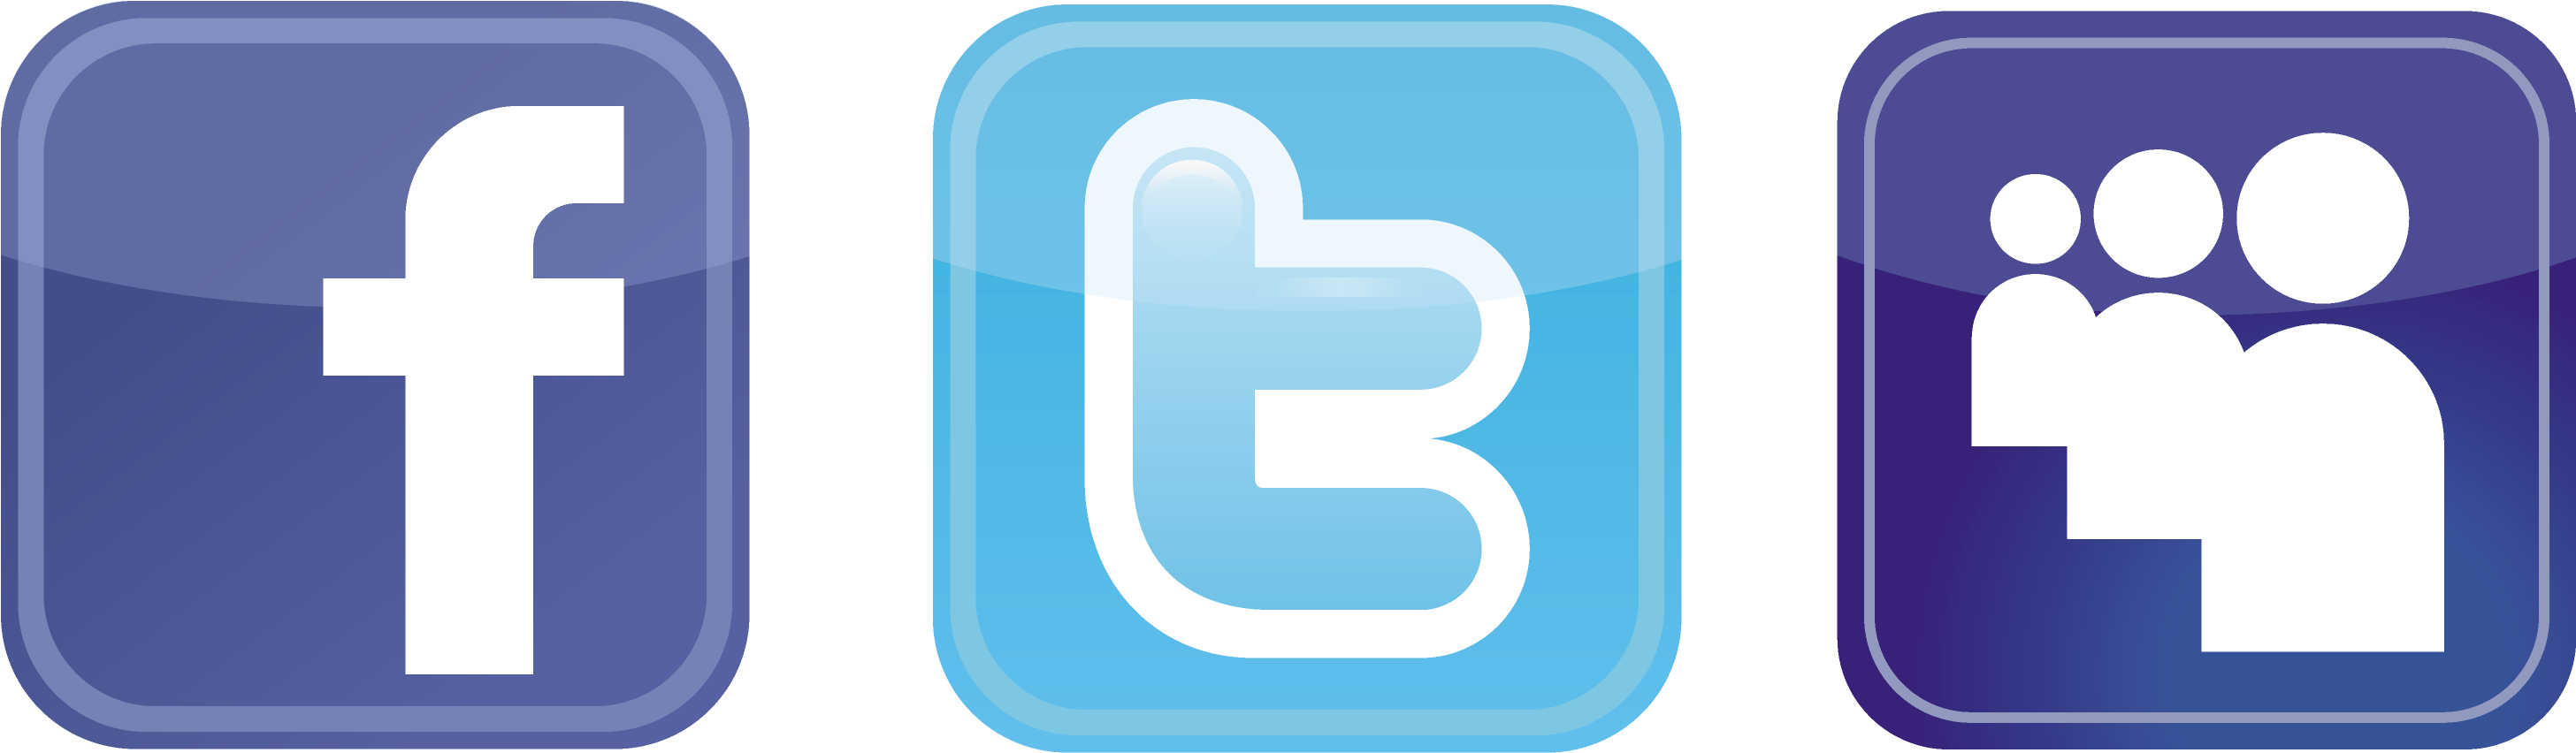 Facebook Twitter Logo Clipart Best Qwbnmj Clipart - Facebook And Twitter Logos Png (3323x1668)